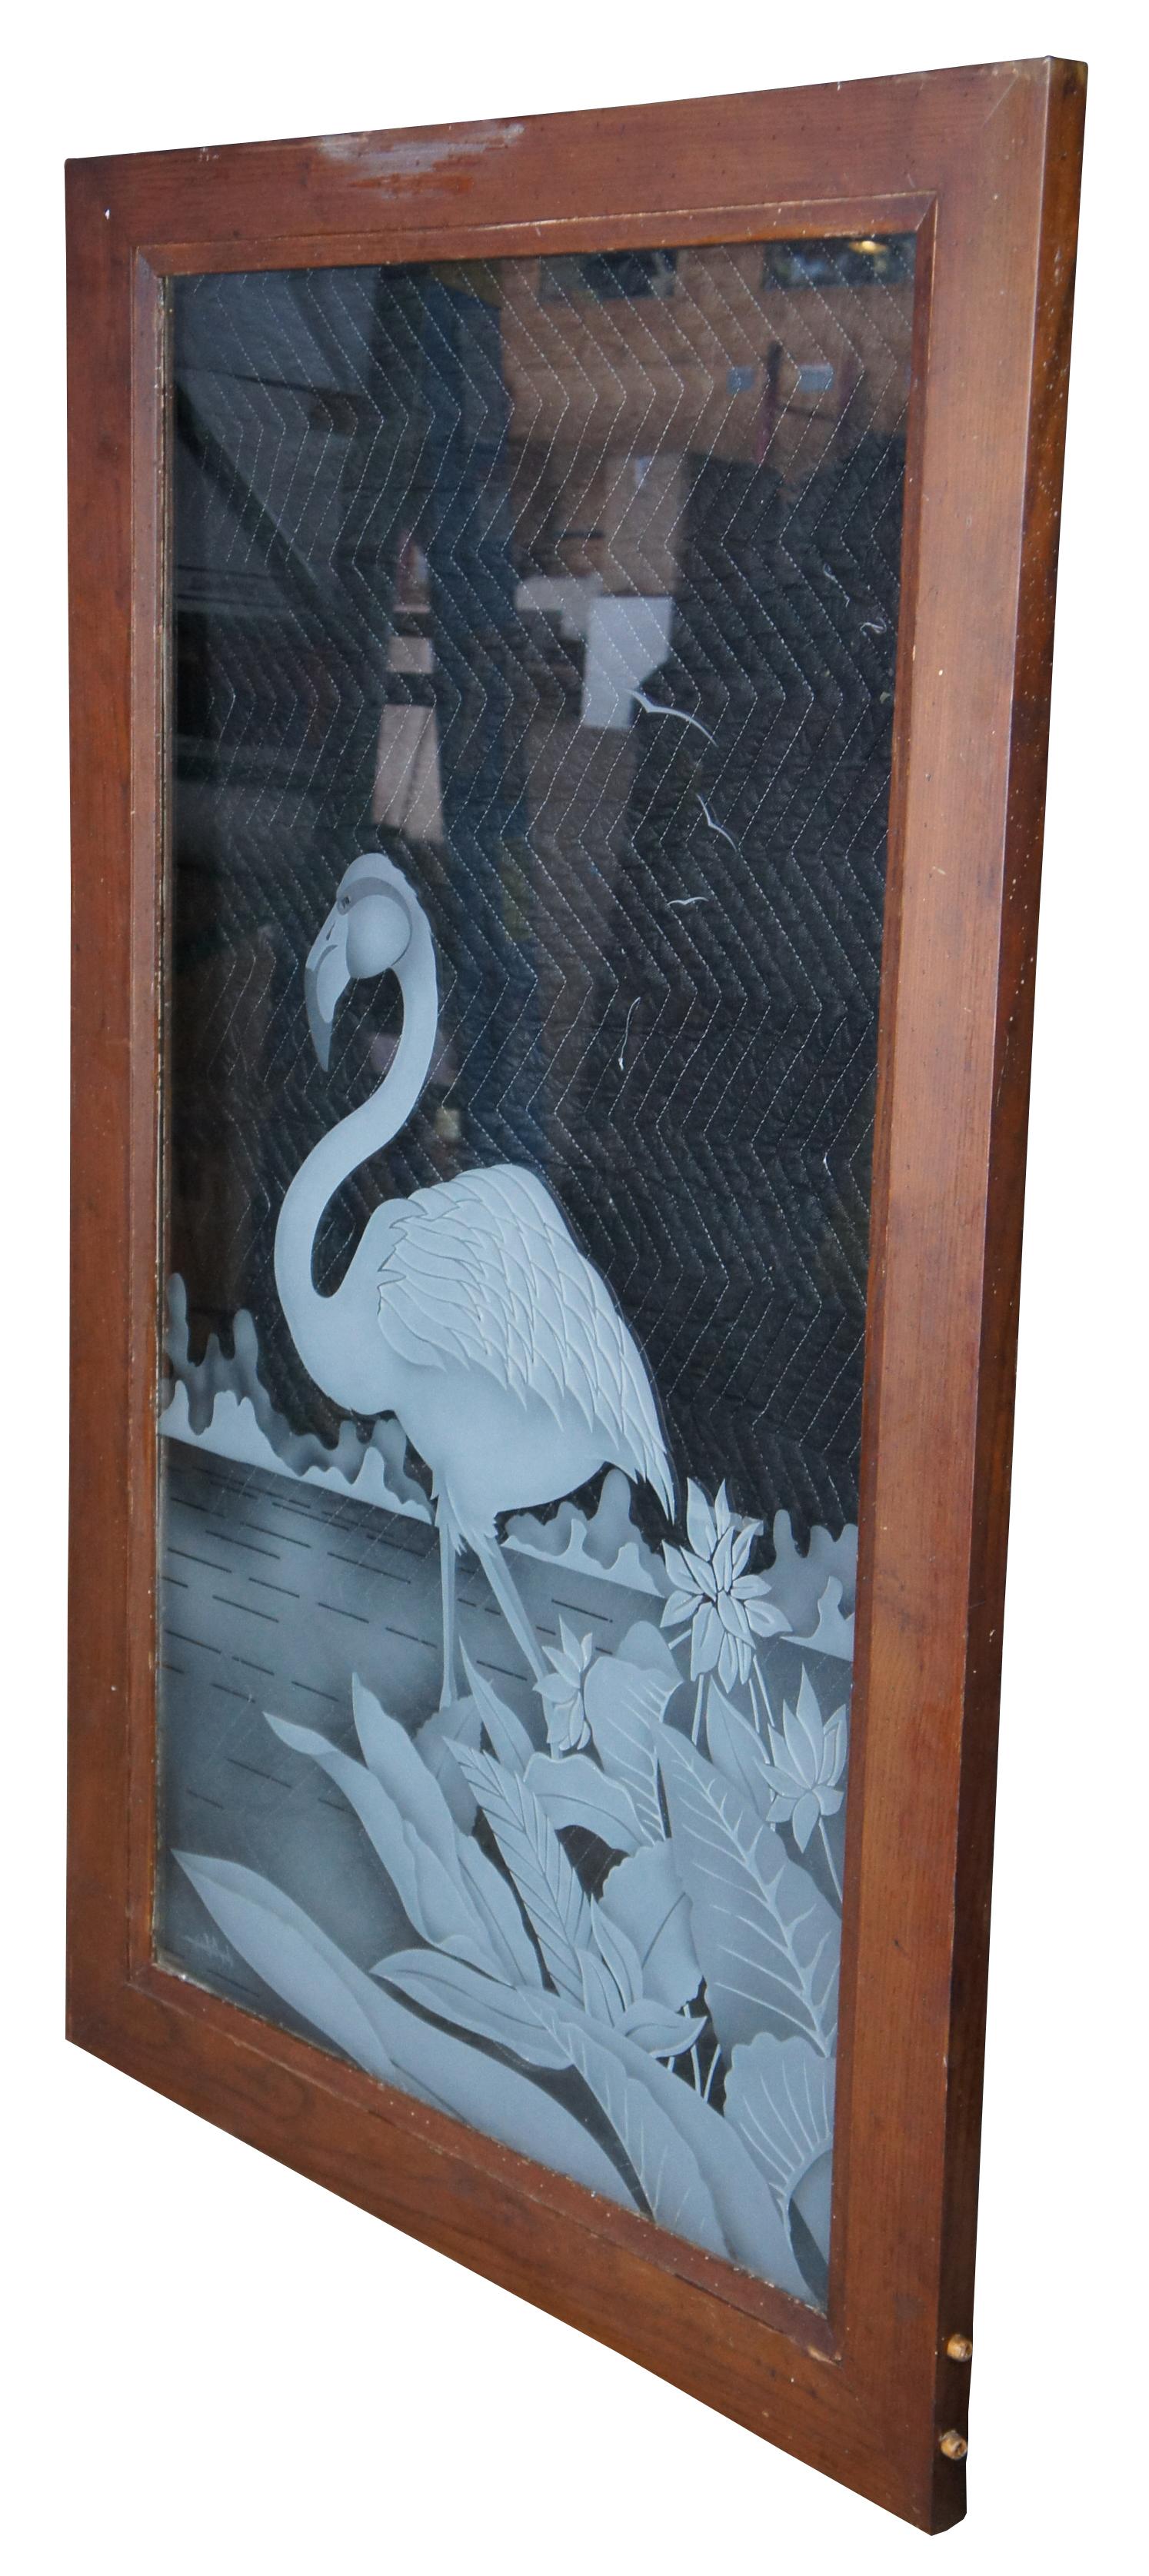 Geätzte Vintage-Glastür oder Fensterscheibe mit einem Flamingo, von Jorge B. Rodriguez. Maße: 56